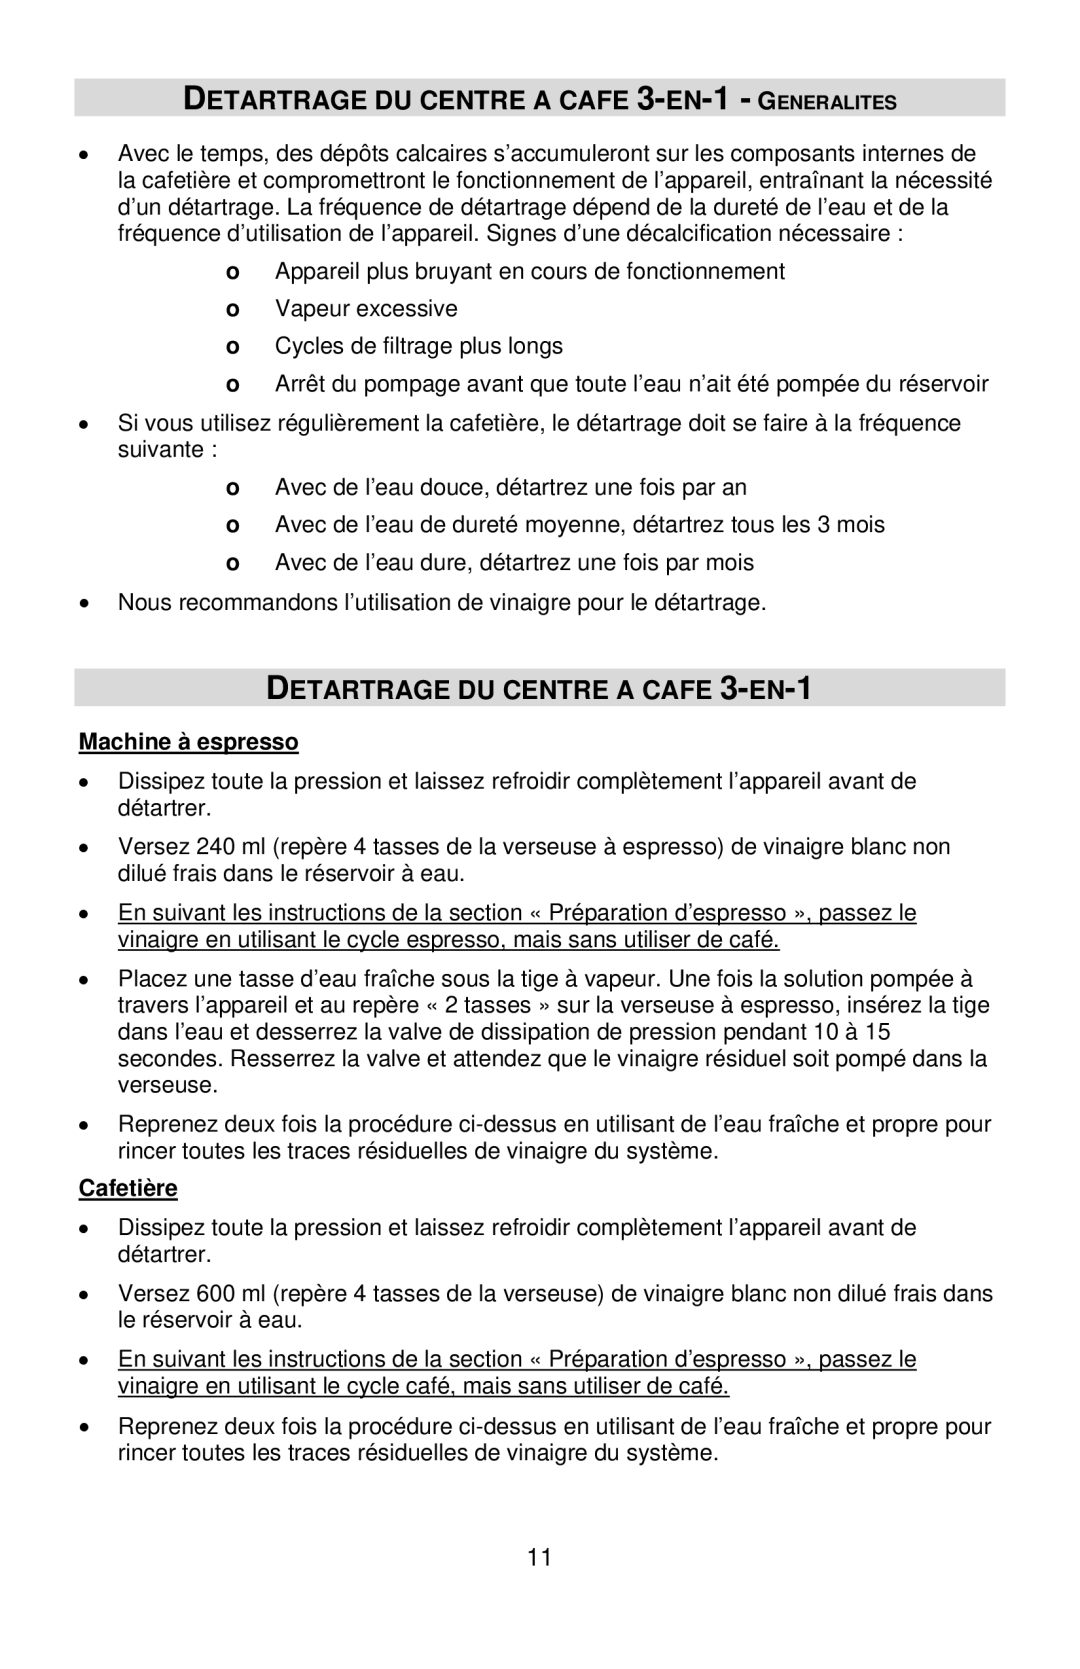 West Bend COFFEE CENTER instruction manual Detartrage DU Centre a Cafe 3-EN-1 Generalites 